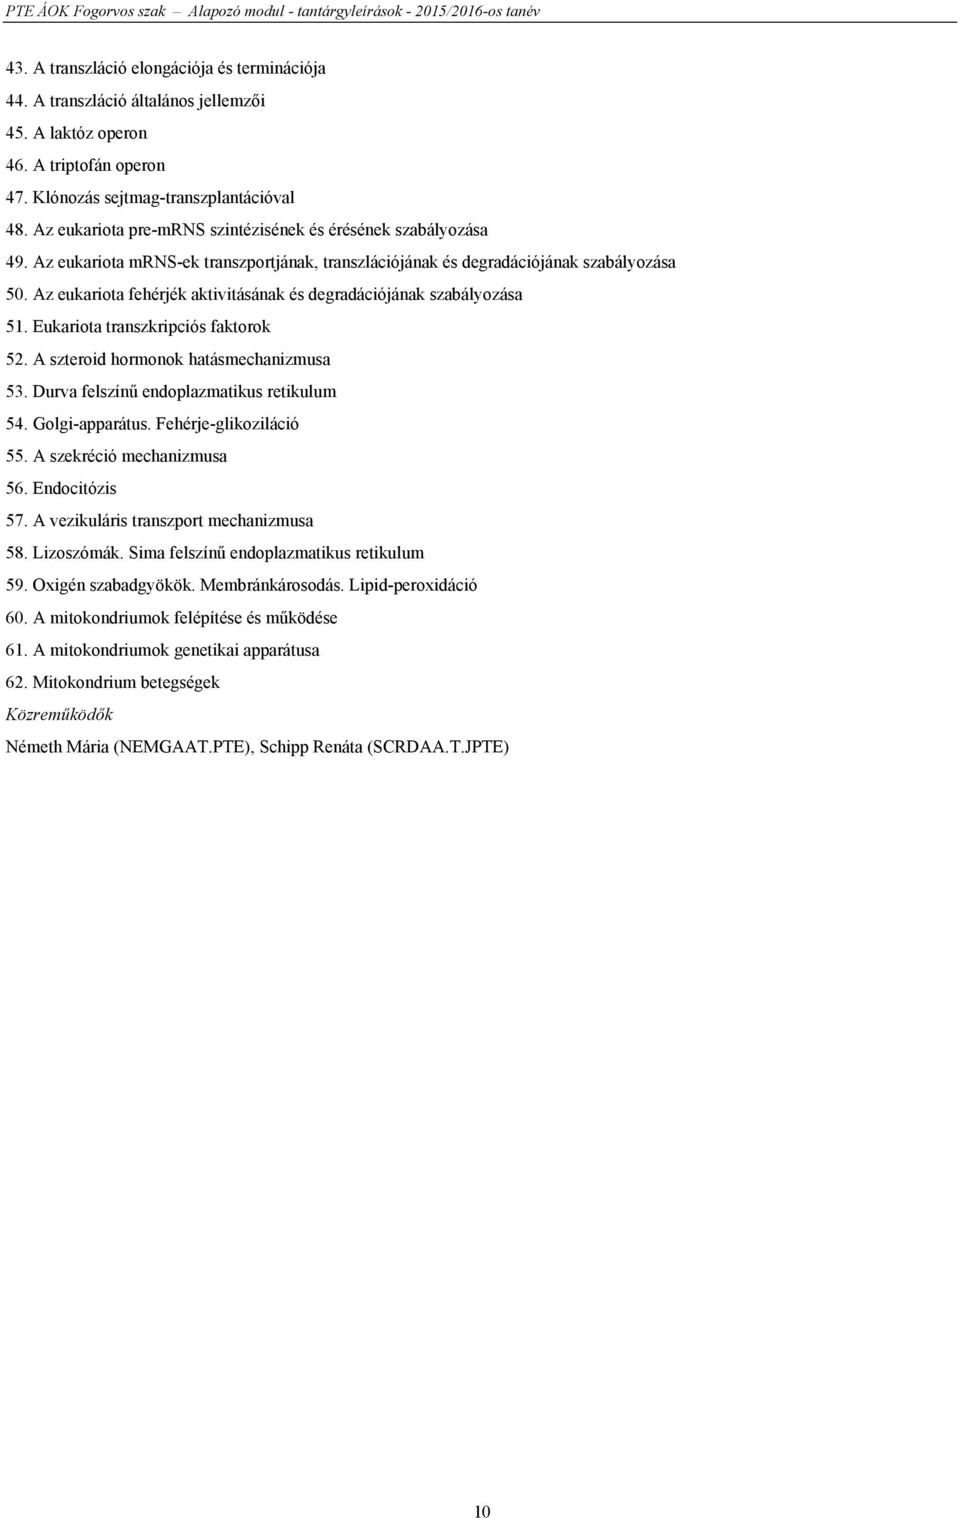 Az Alapozó modul tárgyai (kötelező tárgyak és kritérium követelmények) -  PDF Free Download